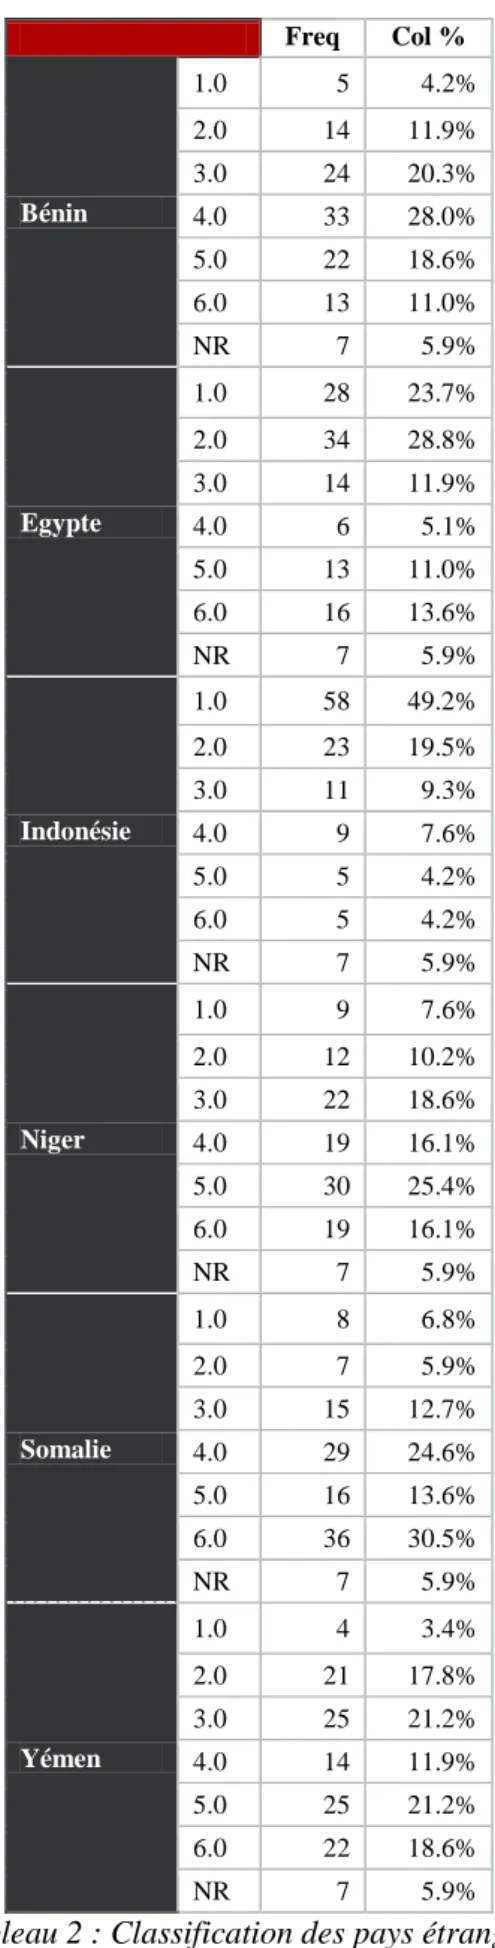 Tableau 2 : Classification des pays étrangers  par ordre croissant en fonction de leur prévalence 